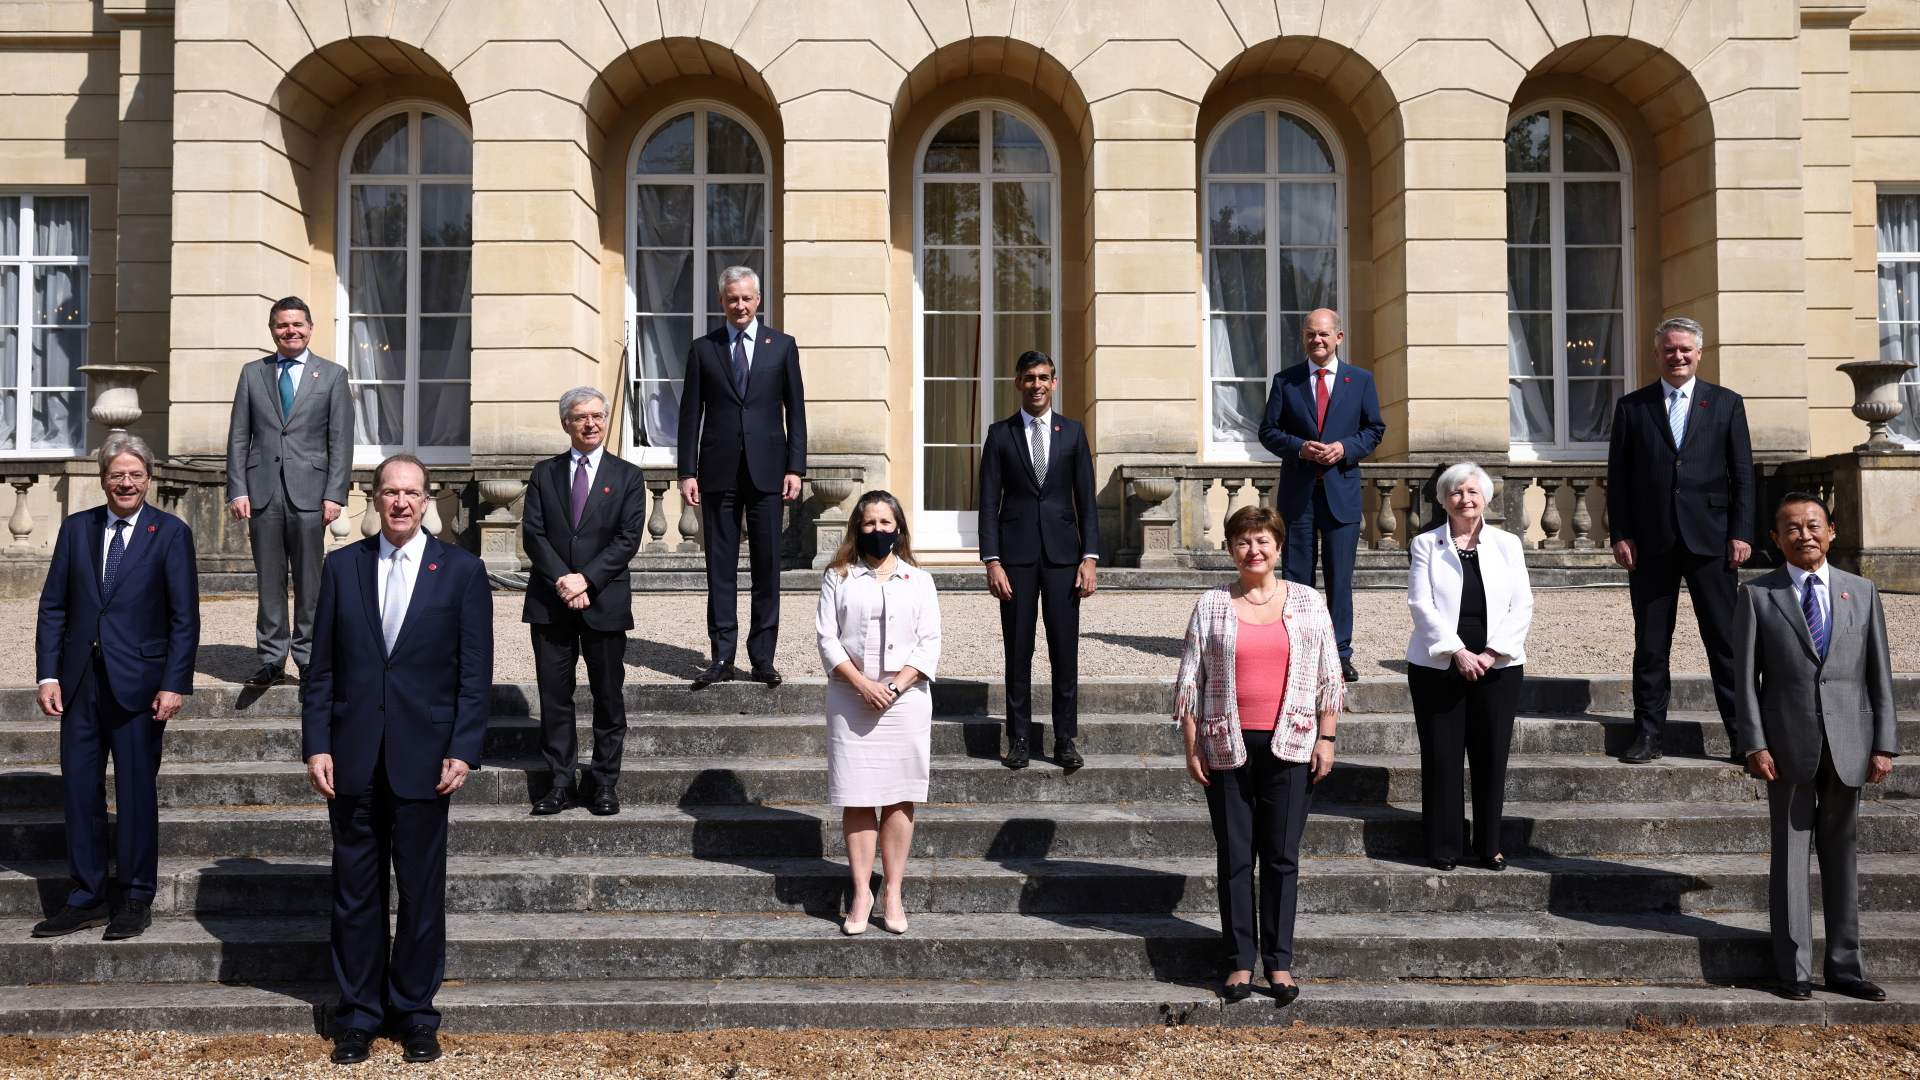 Die Finanzminister der G7-Staaten, Präsident der Weltbank und IWF-Direktorin Georgiewa beim traditionellen "Familienfoto" | dpa